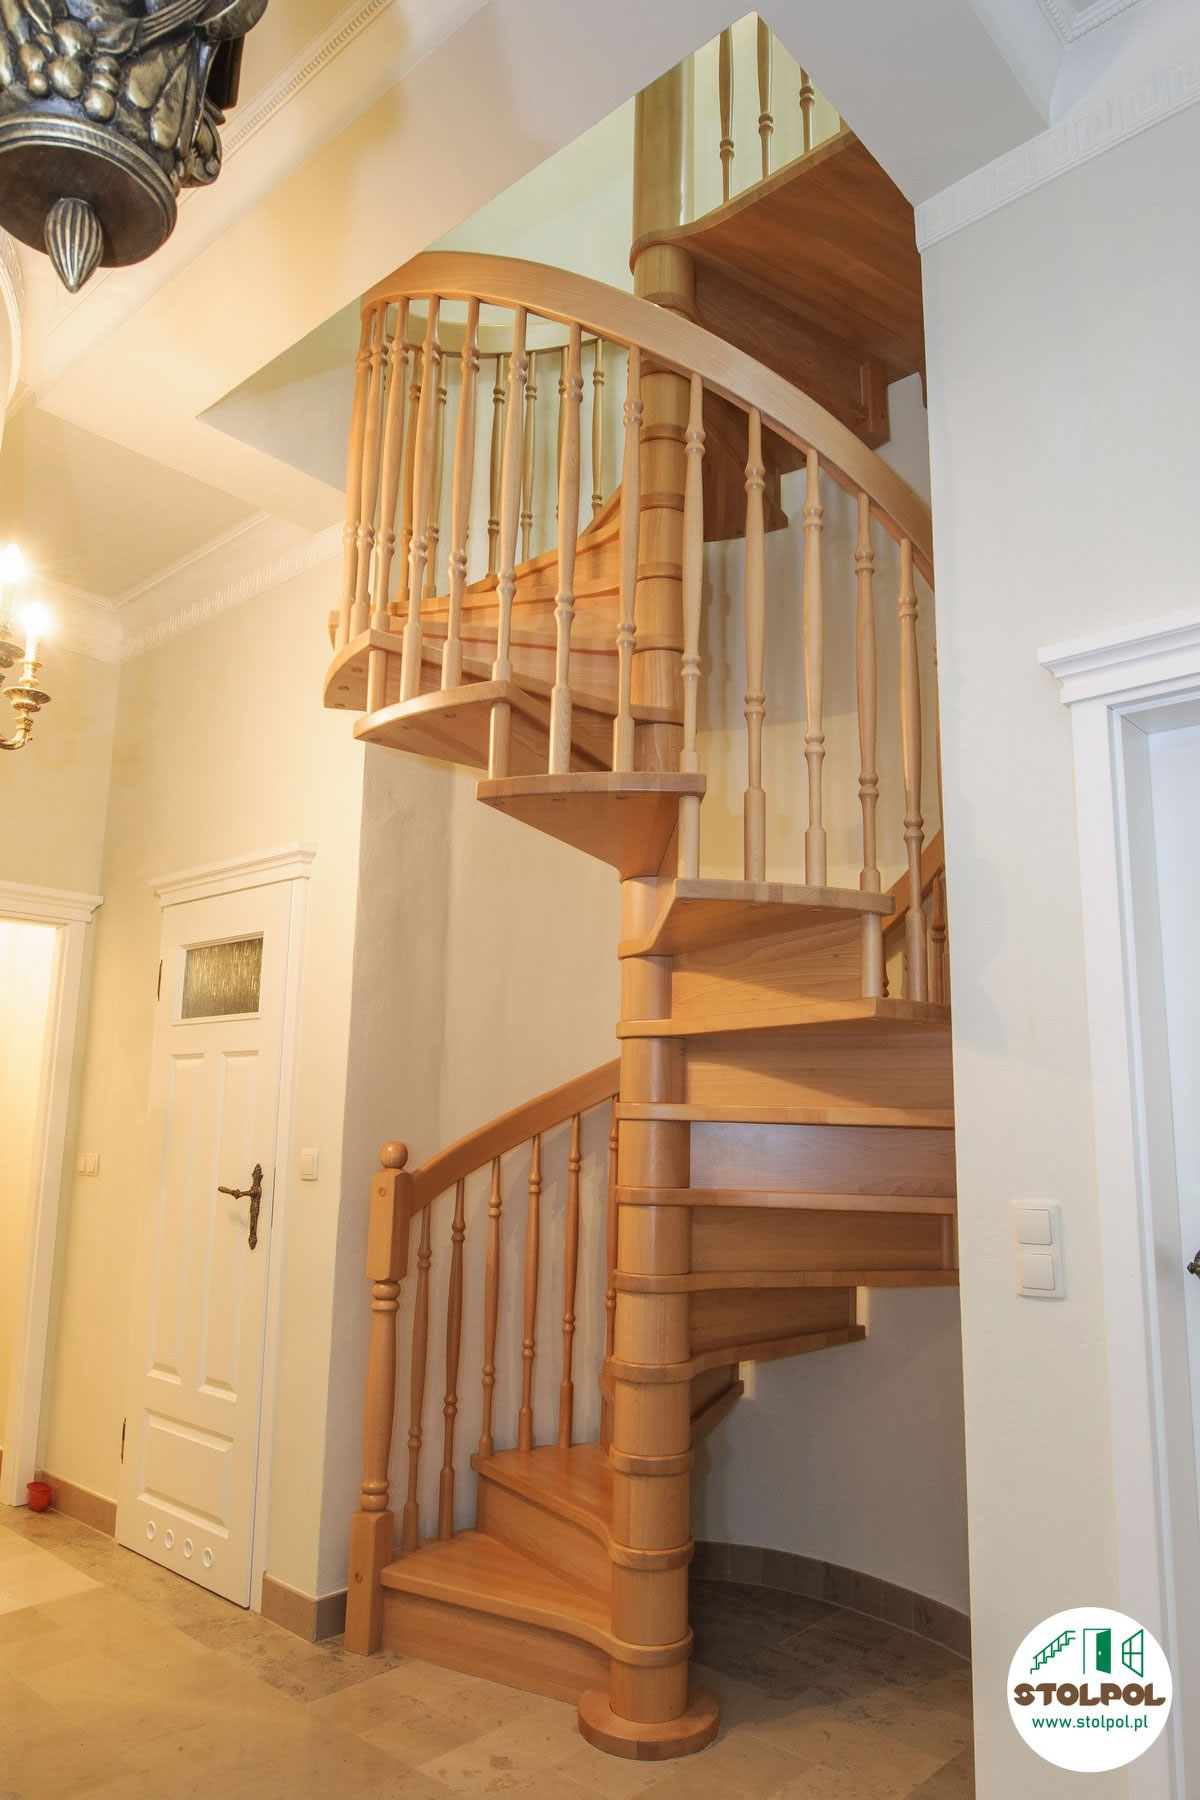 <p>Tradycyjne drewniane schody spiralne - kręte wpasowane w ponadstandardową wysokość i kąt rozwarci...